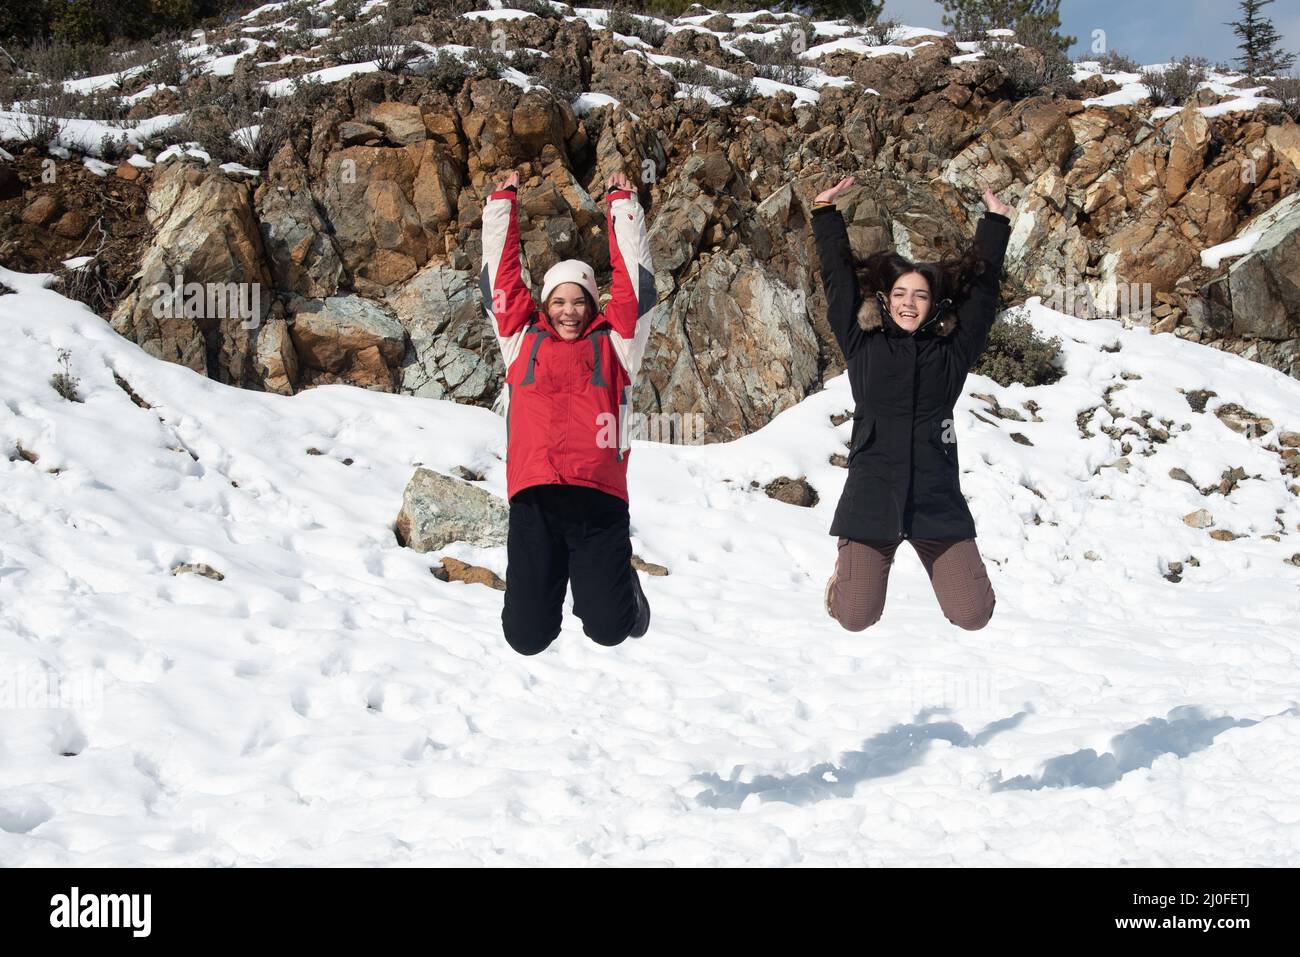 Deux jeunes filles adolescentes qui sautent avec plaisir dans la neige. Banque D'Images